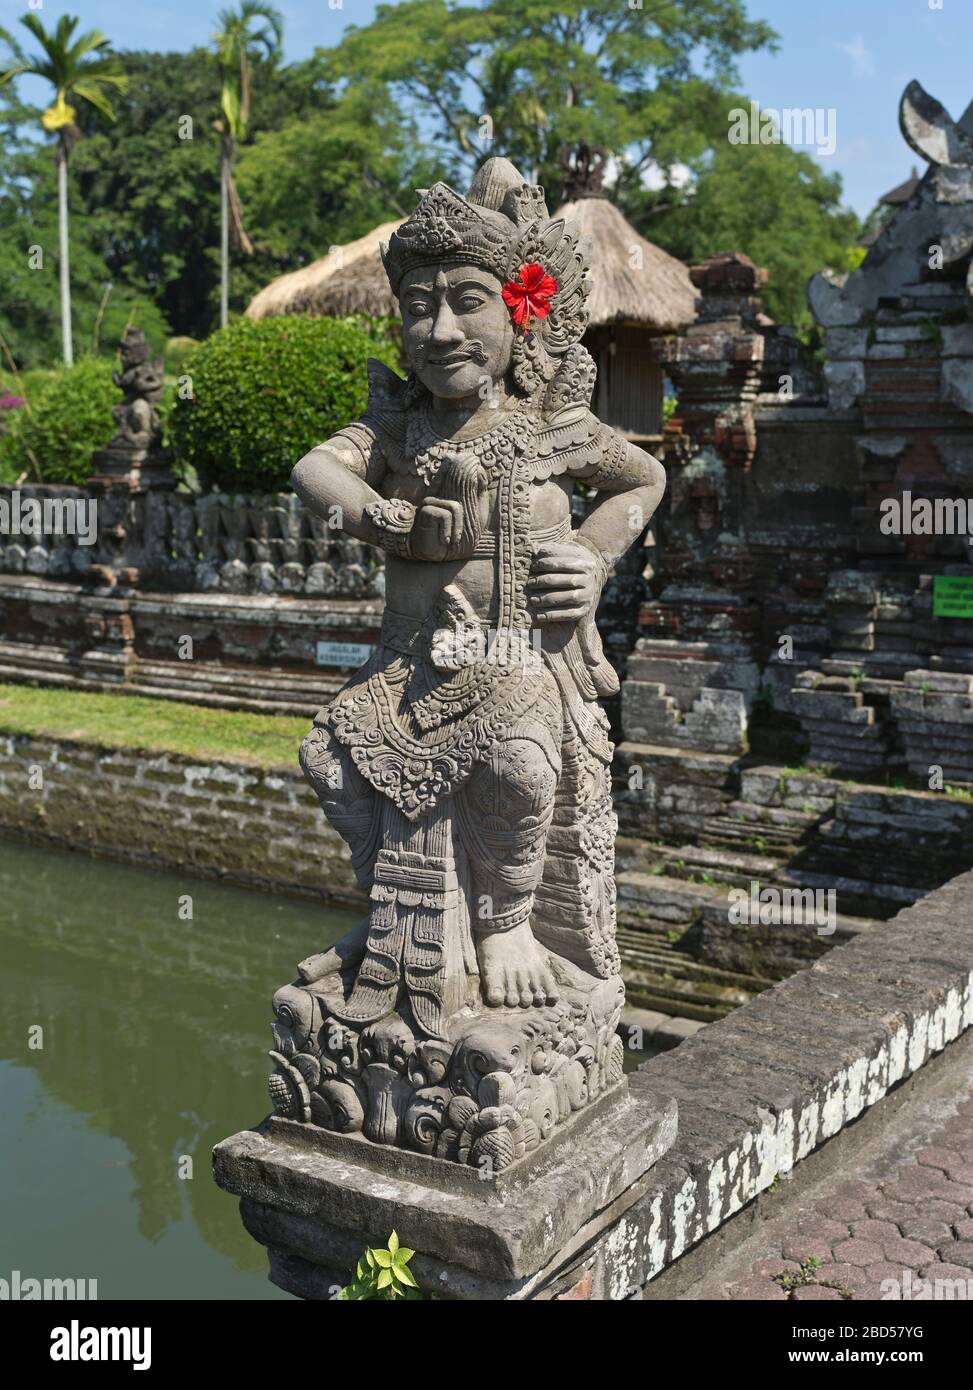 dh Pura Taman Ayun Temple Royal BALI INDONÉSIE Mengwi Balinese statue idole gardien du Temple hinduisme religion hindoue asiatique Banque D'Images